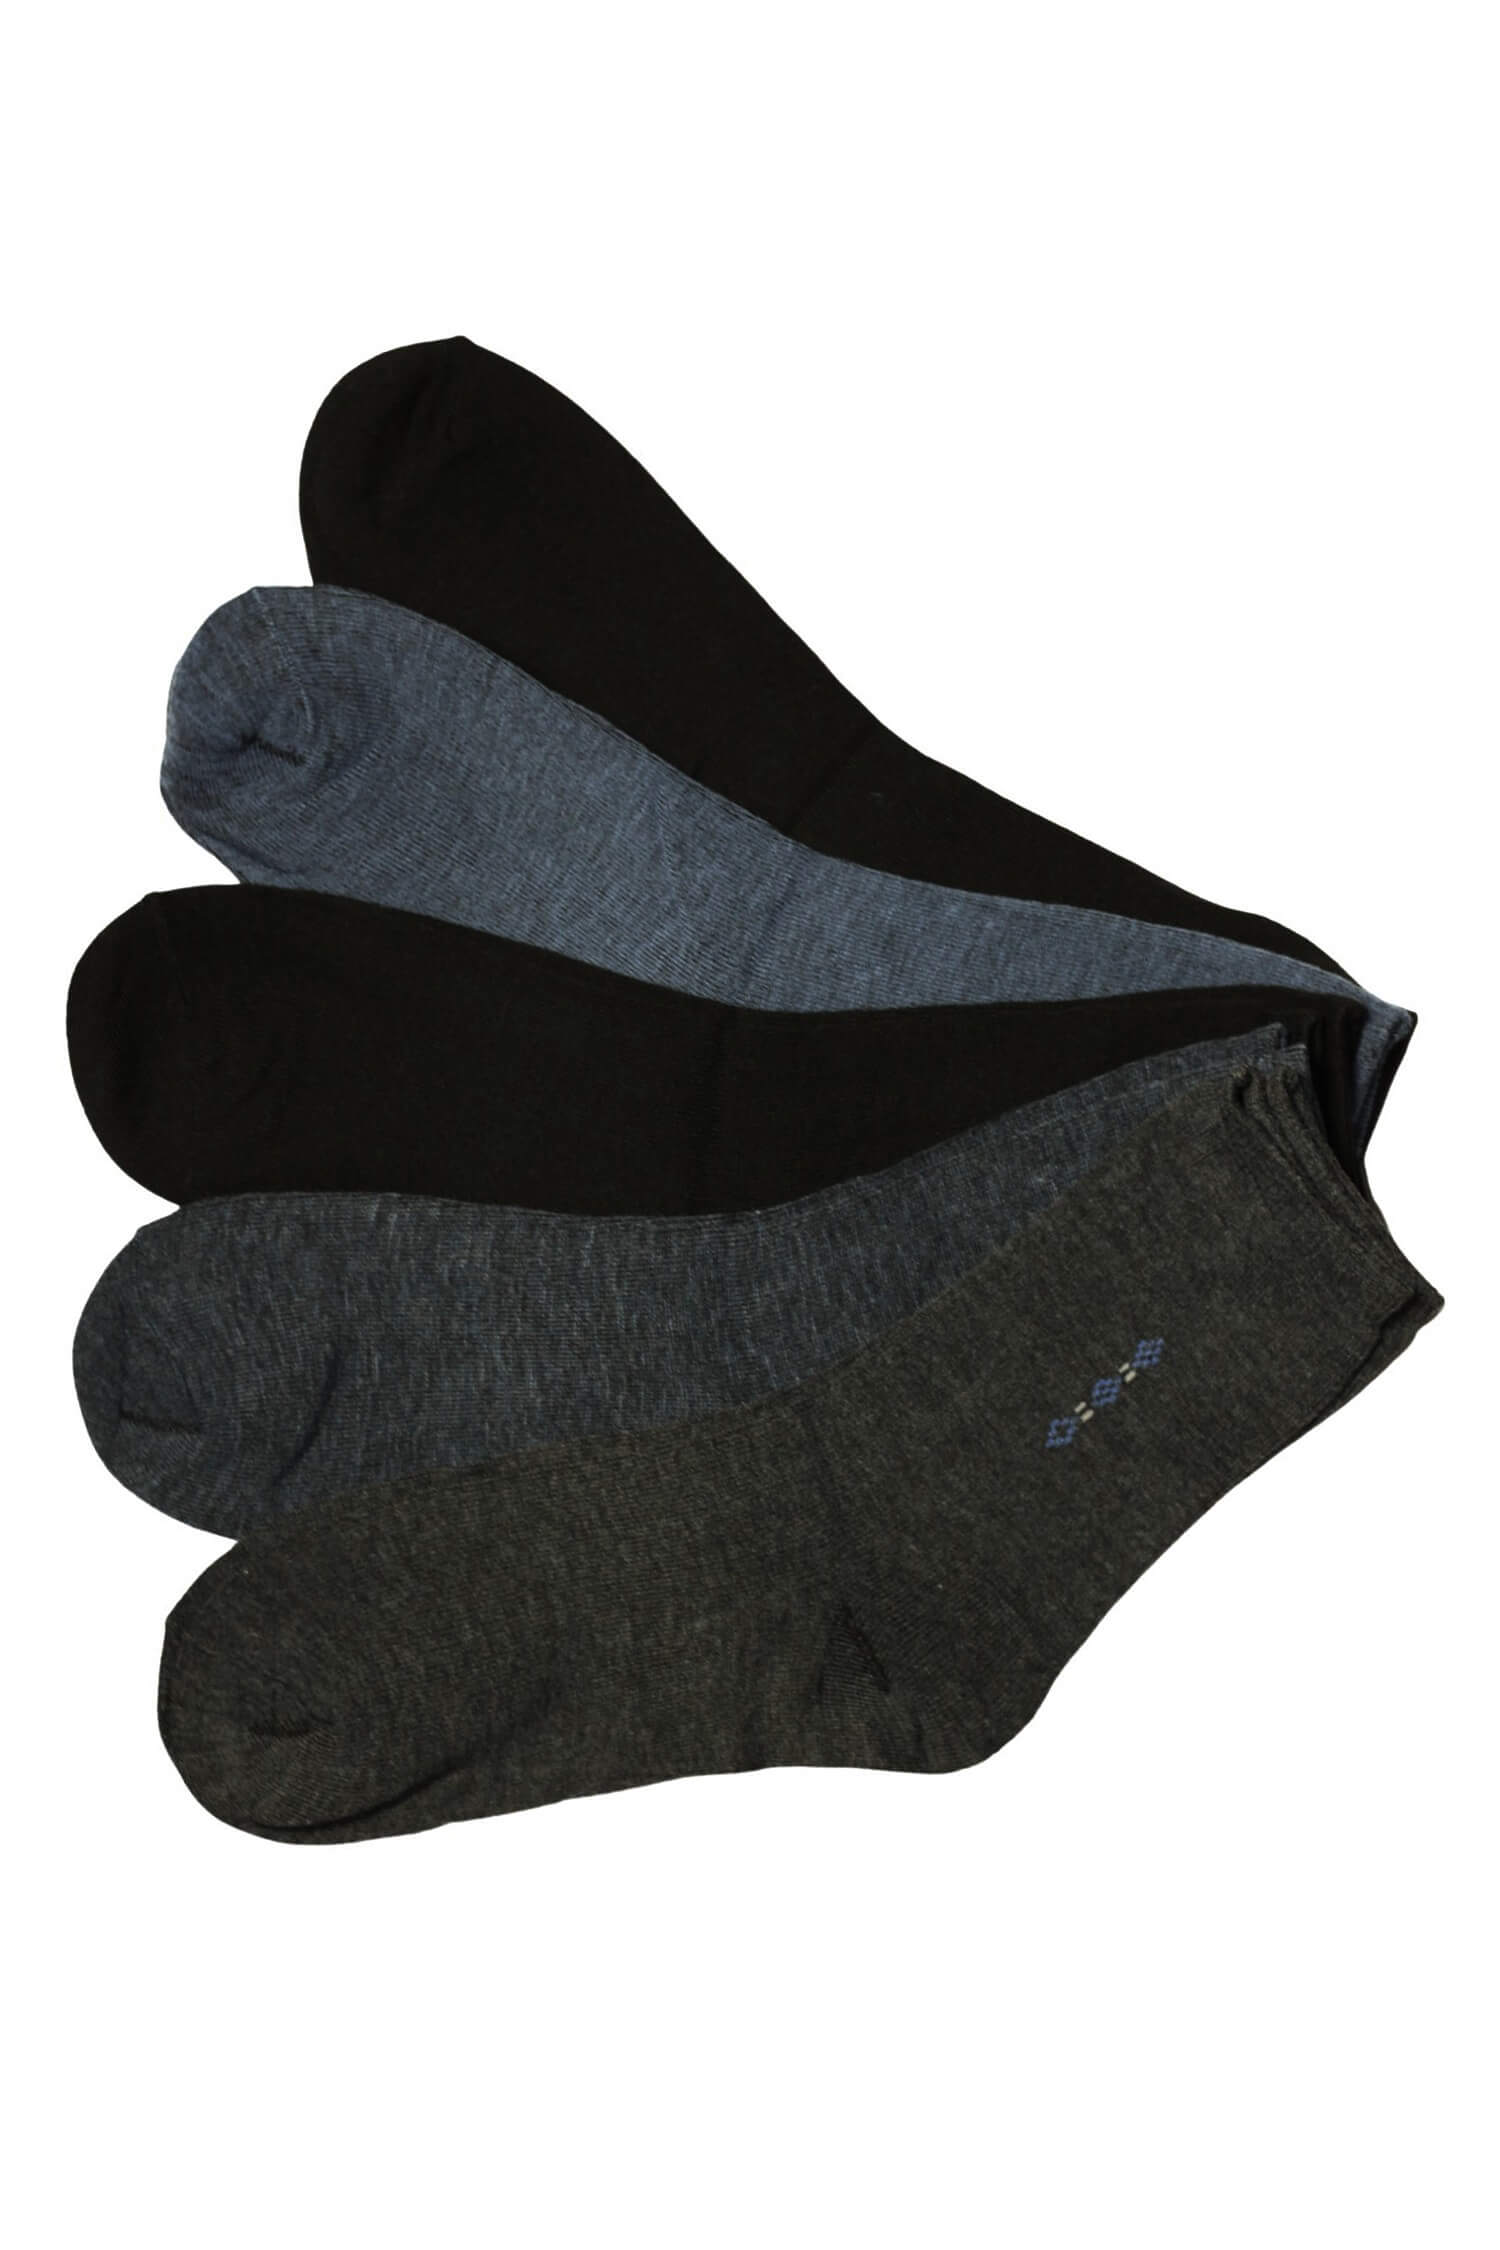 Pánské ponožky bambus B-901 - 5 párů 39-42 vícebarevná